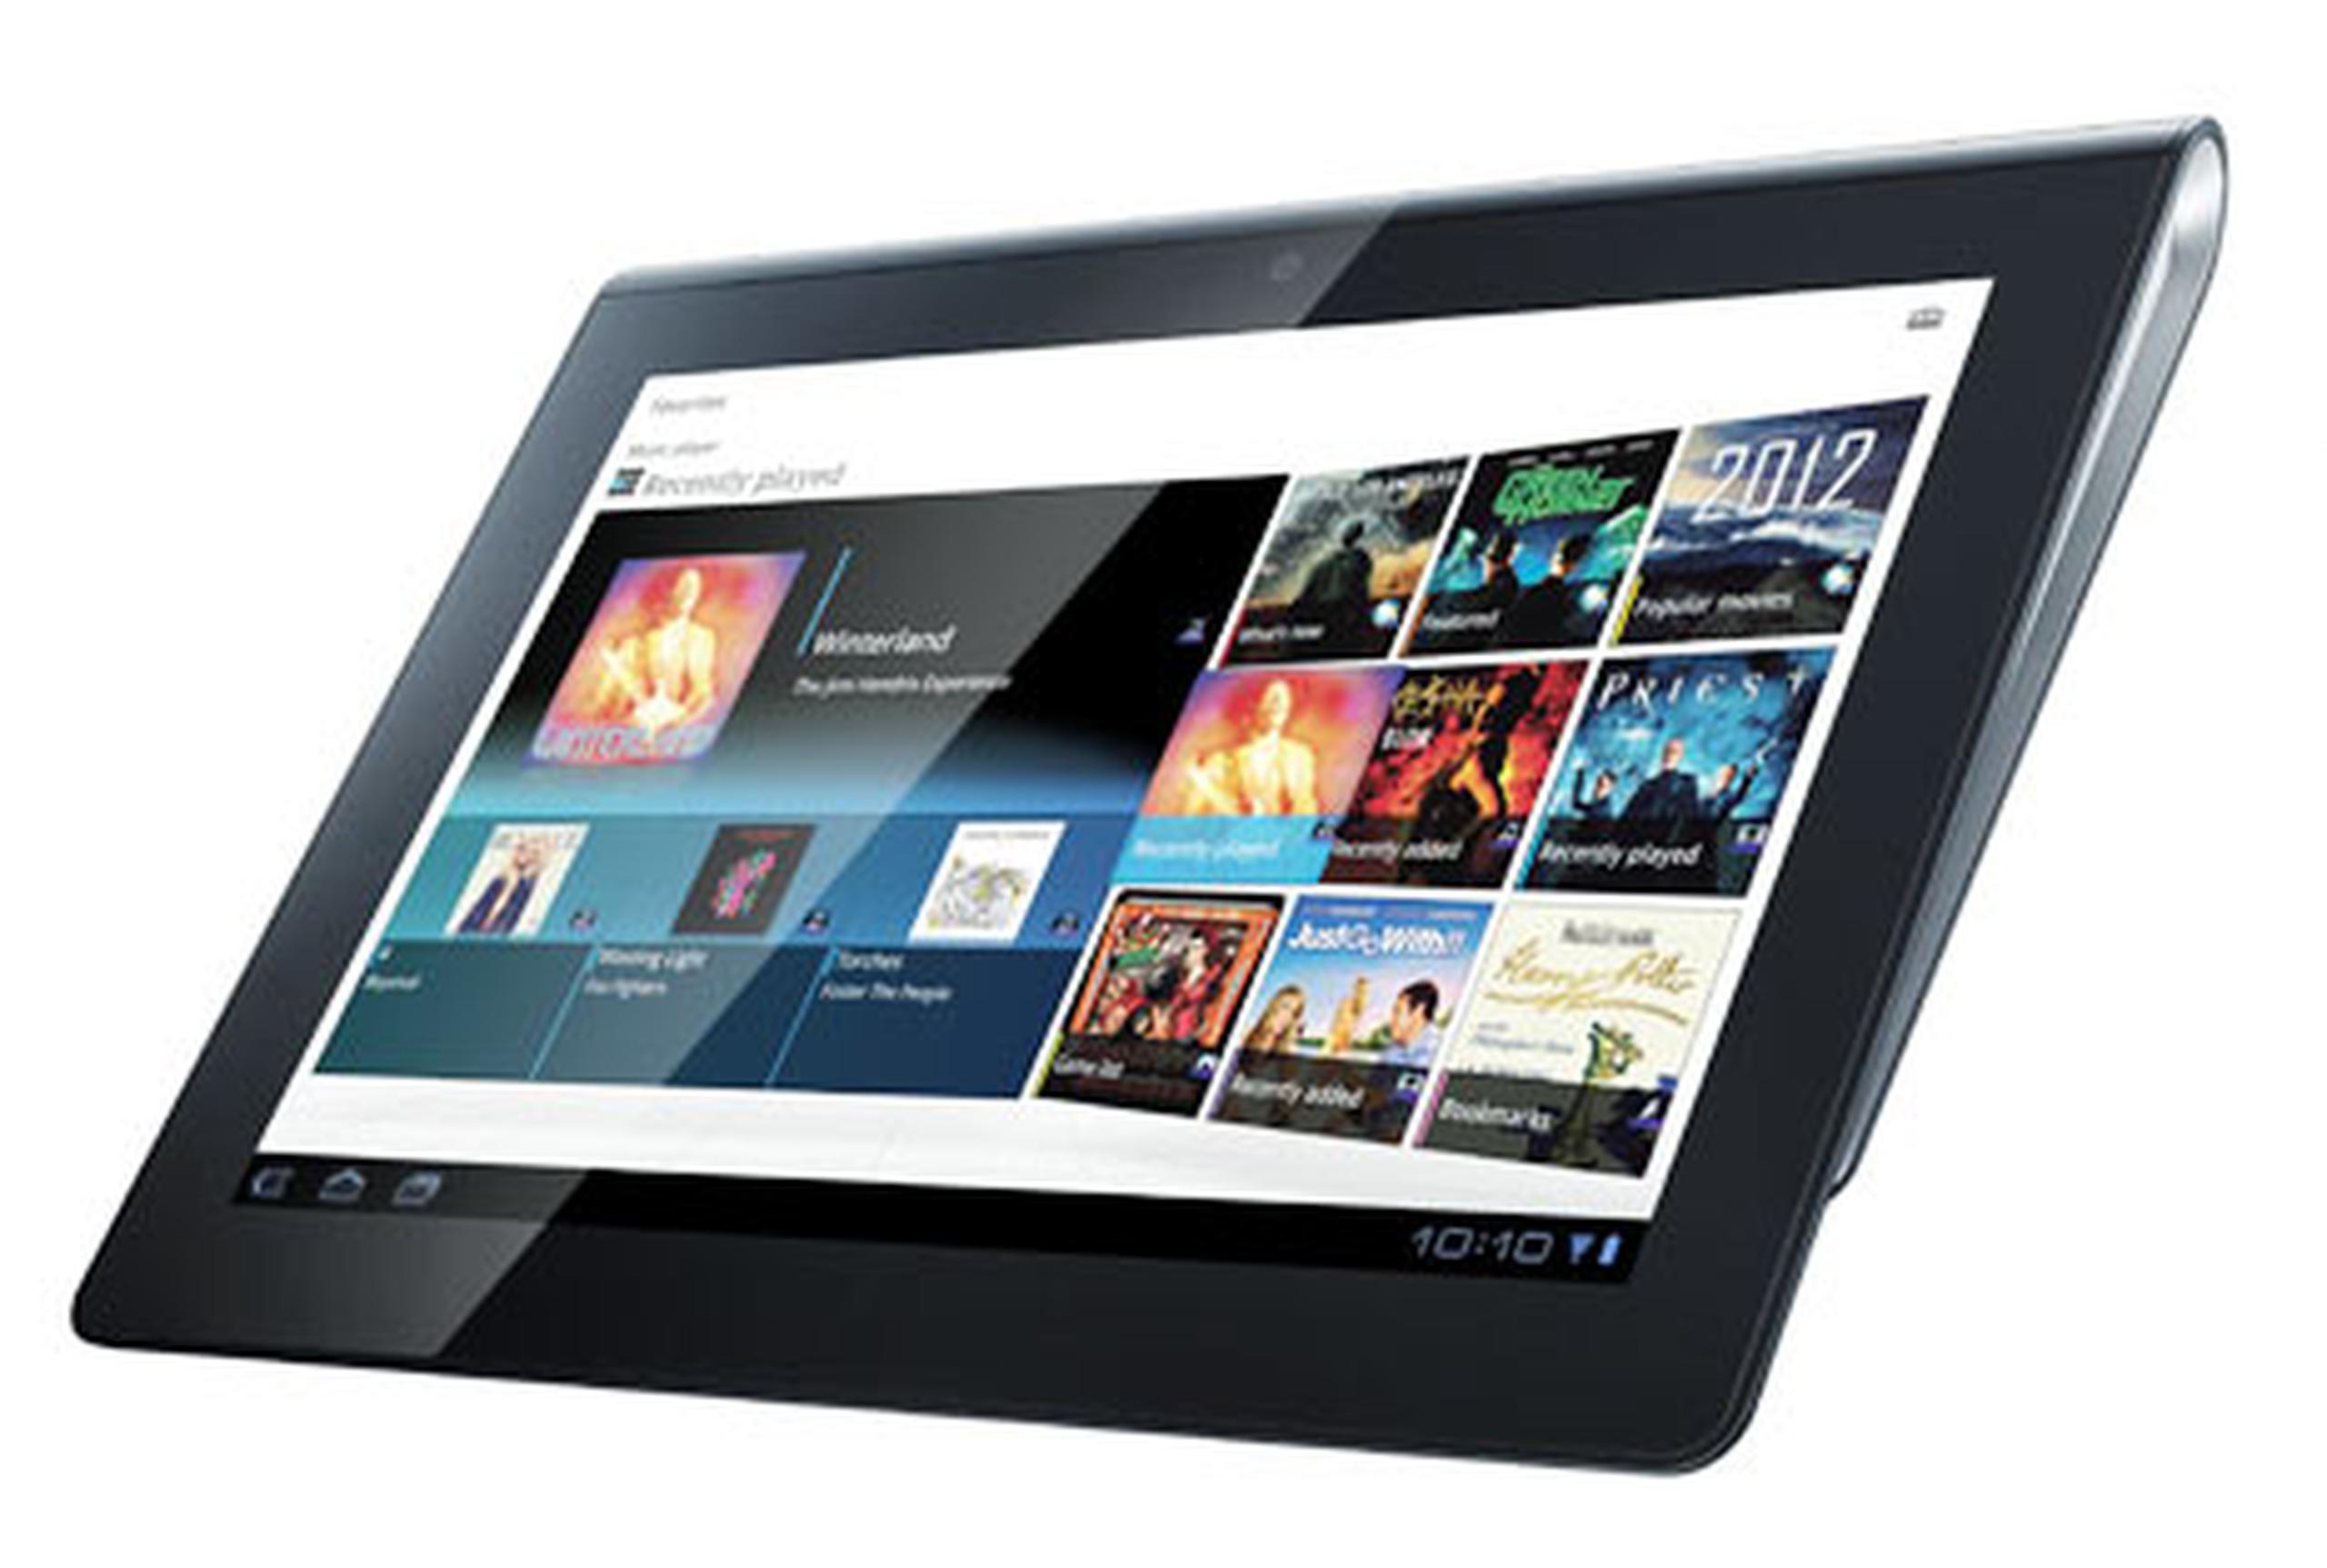 La Tableta S, de Sony, es casi del mismo tamaño que el iPad. (AP/Sony Corp.)
